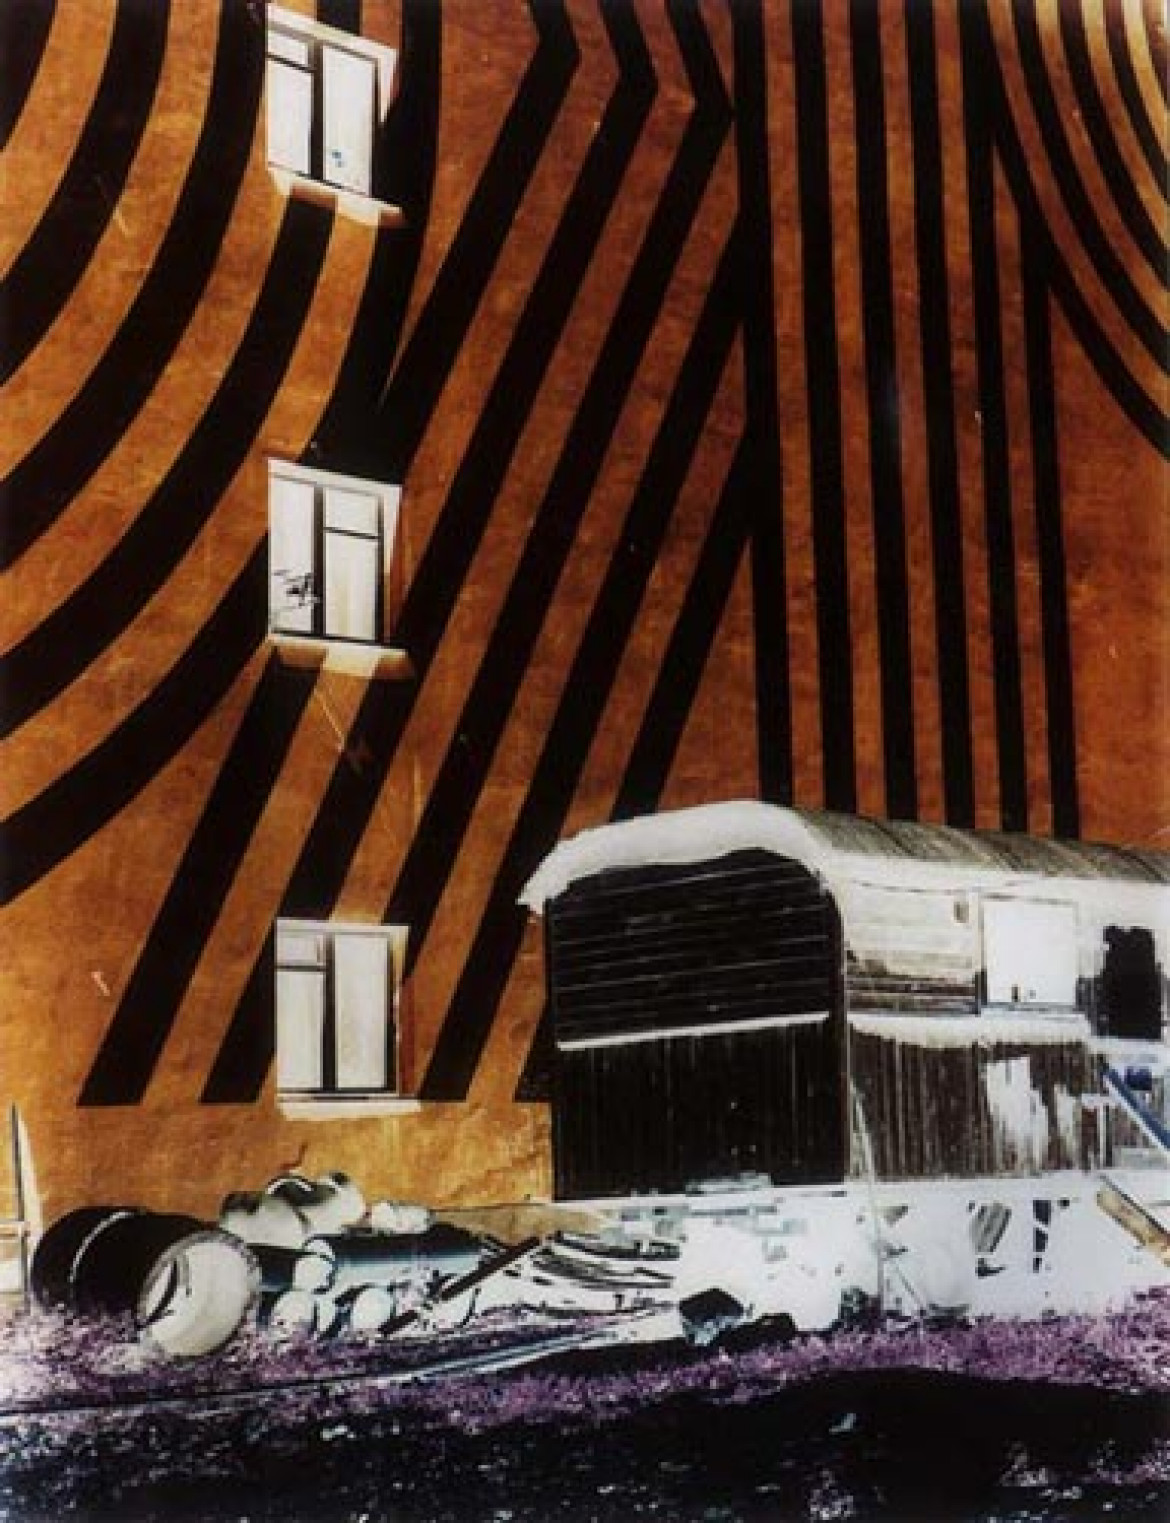 Edward Hartwig "Dziwny Sen" (Strange dream), 1996, negatyw, 38,5 x 30 cm 
wystawa "Fotografia", Galeria Bayer, Warszawa
